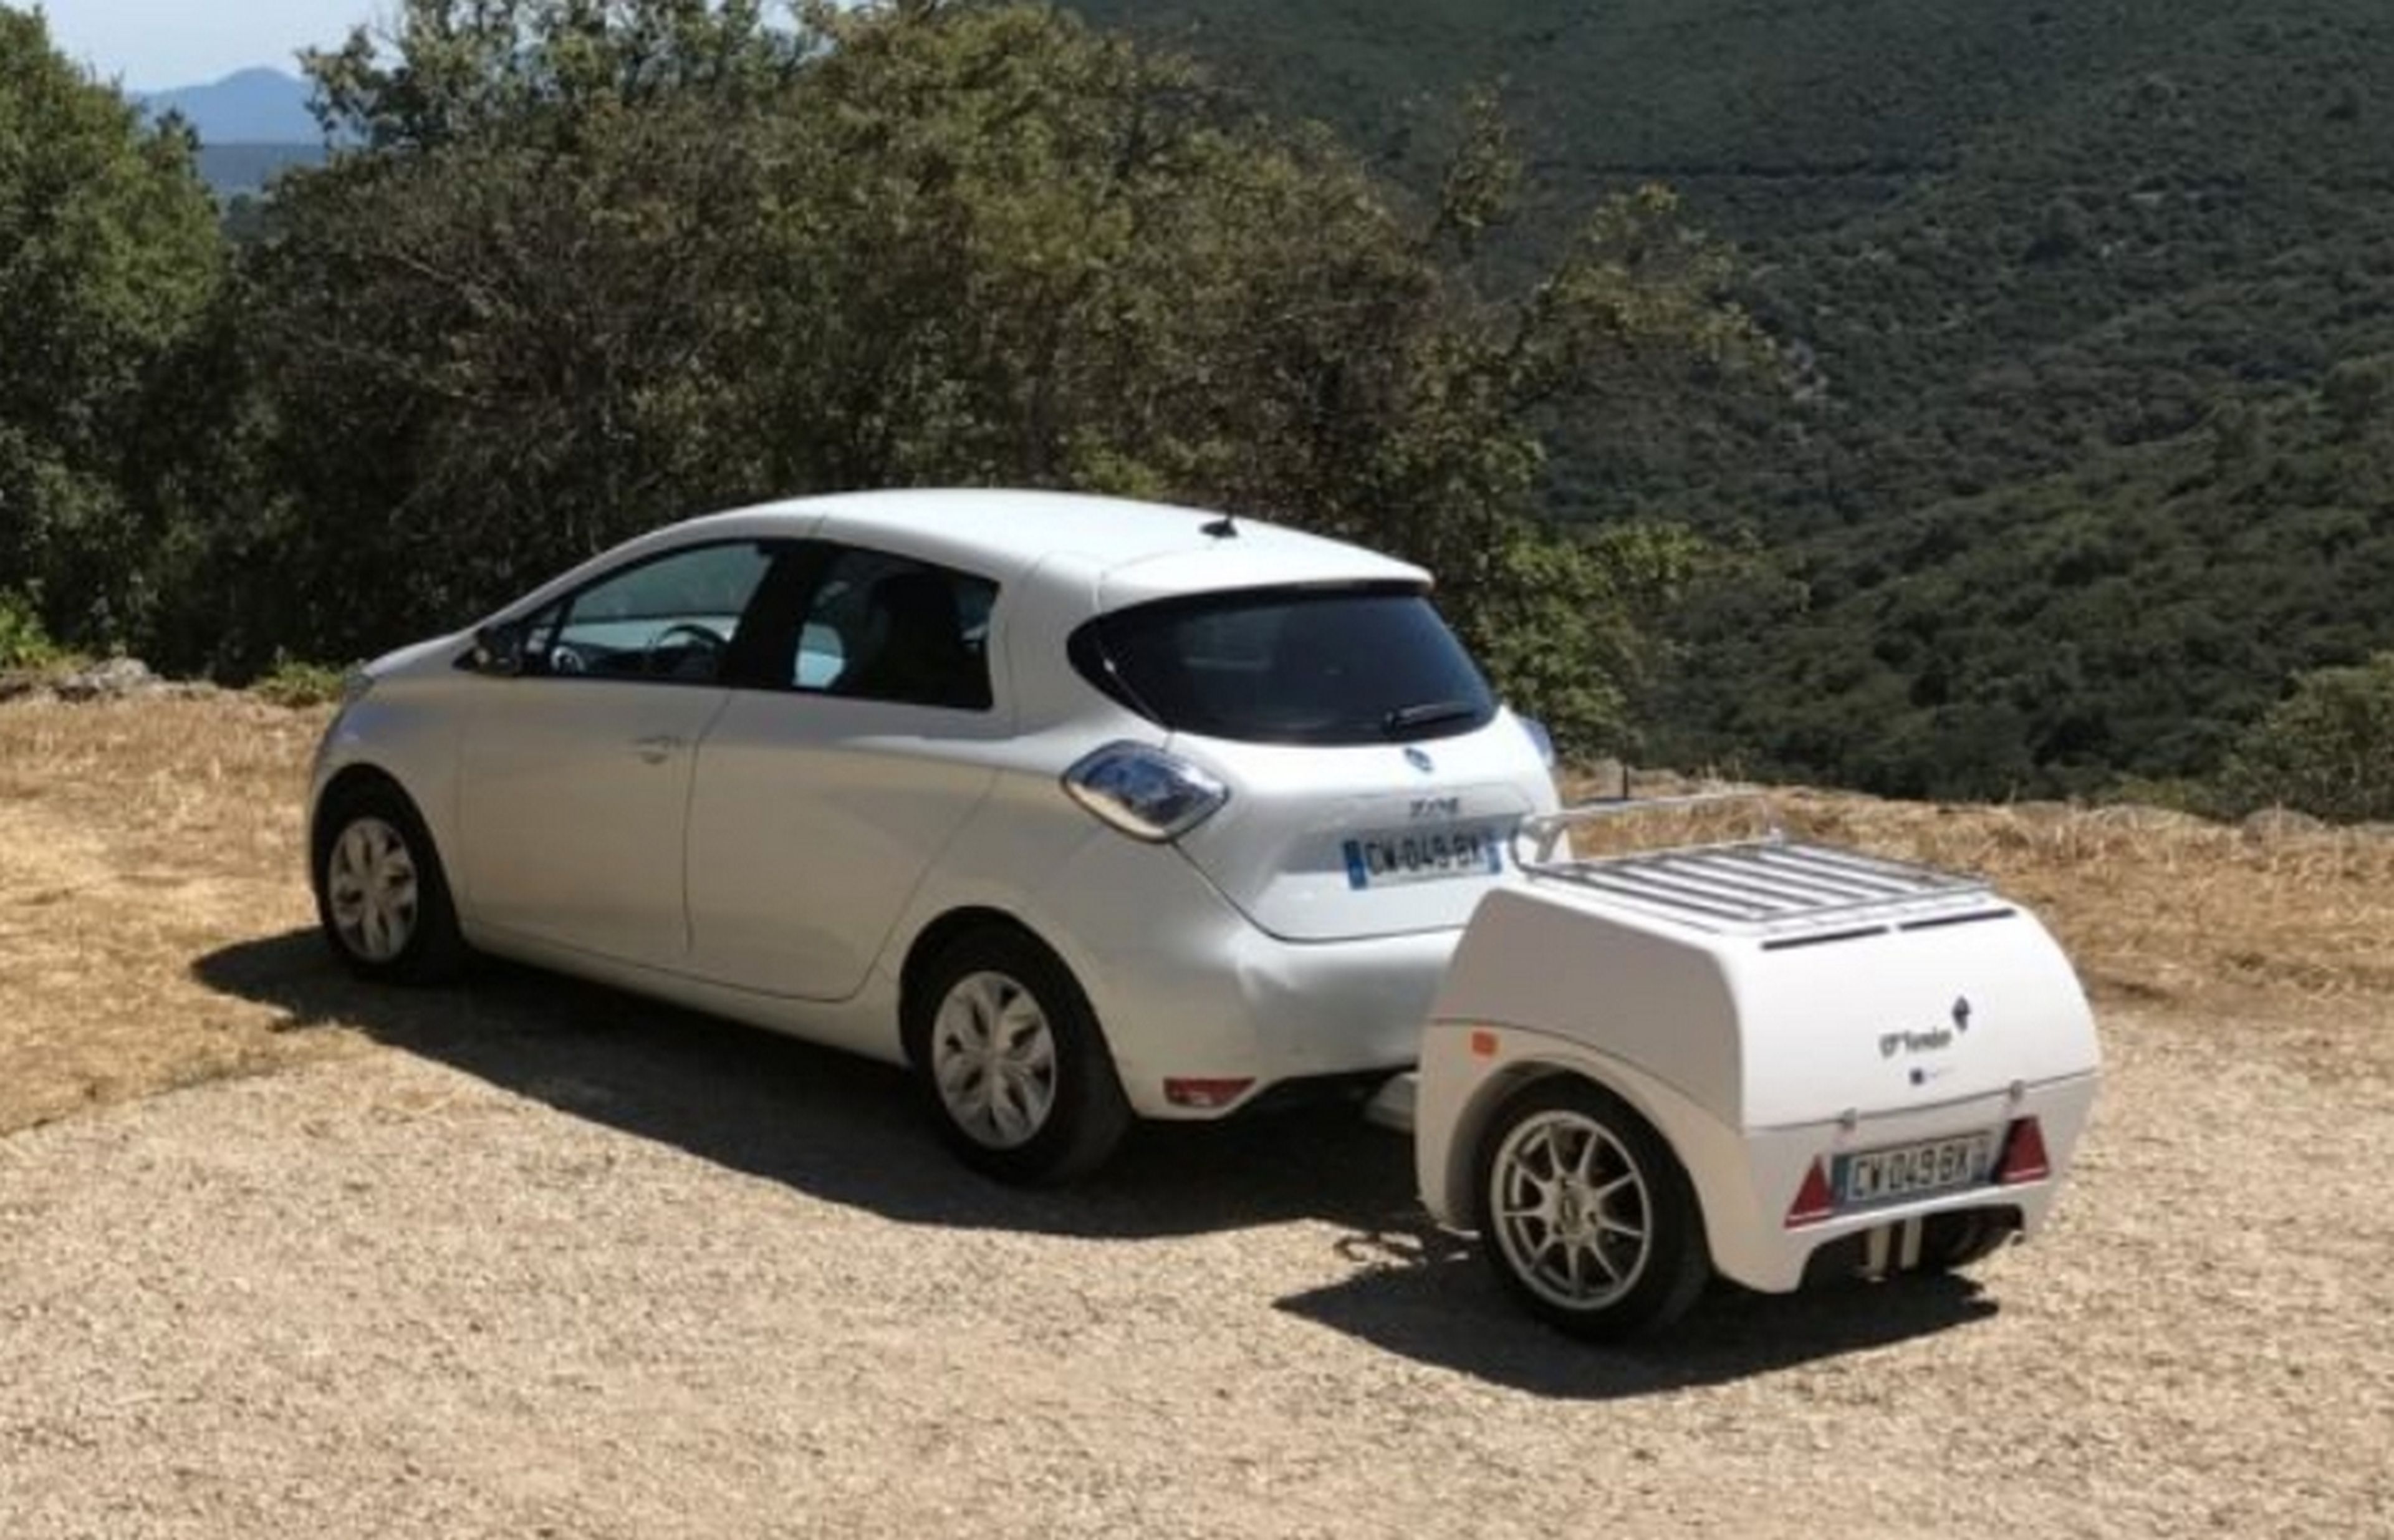 EP Tender, el remolque inteligente que dobla la autonomía de los coches eléctricos